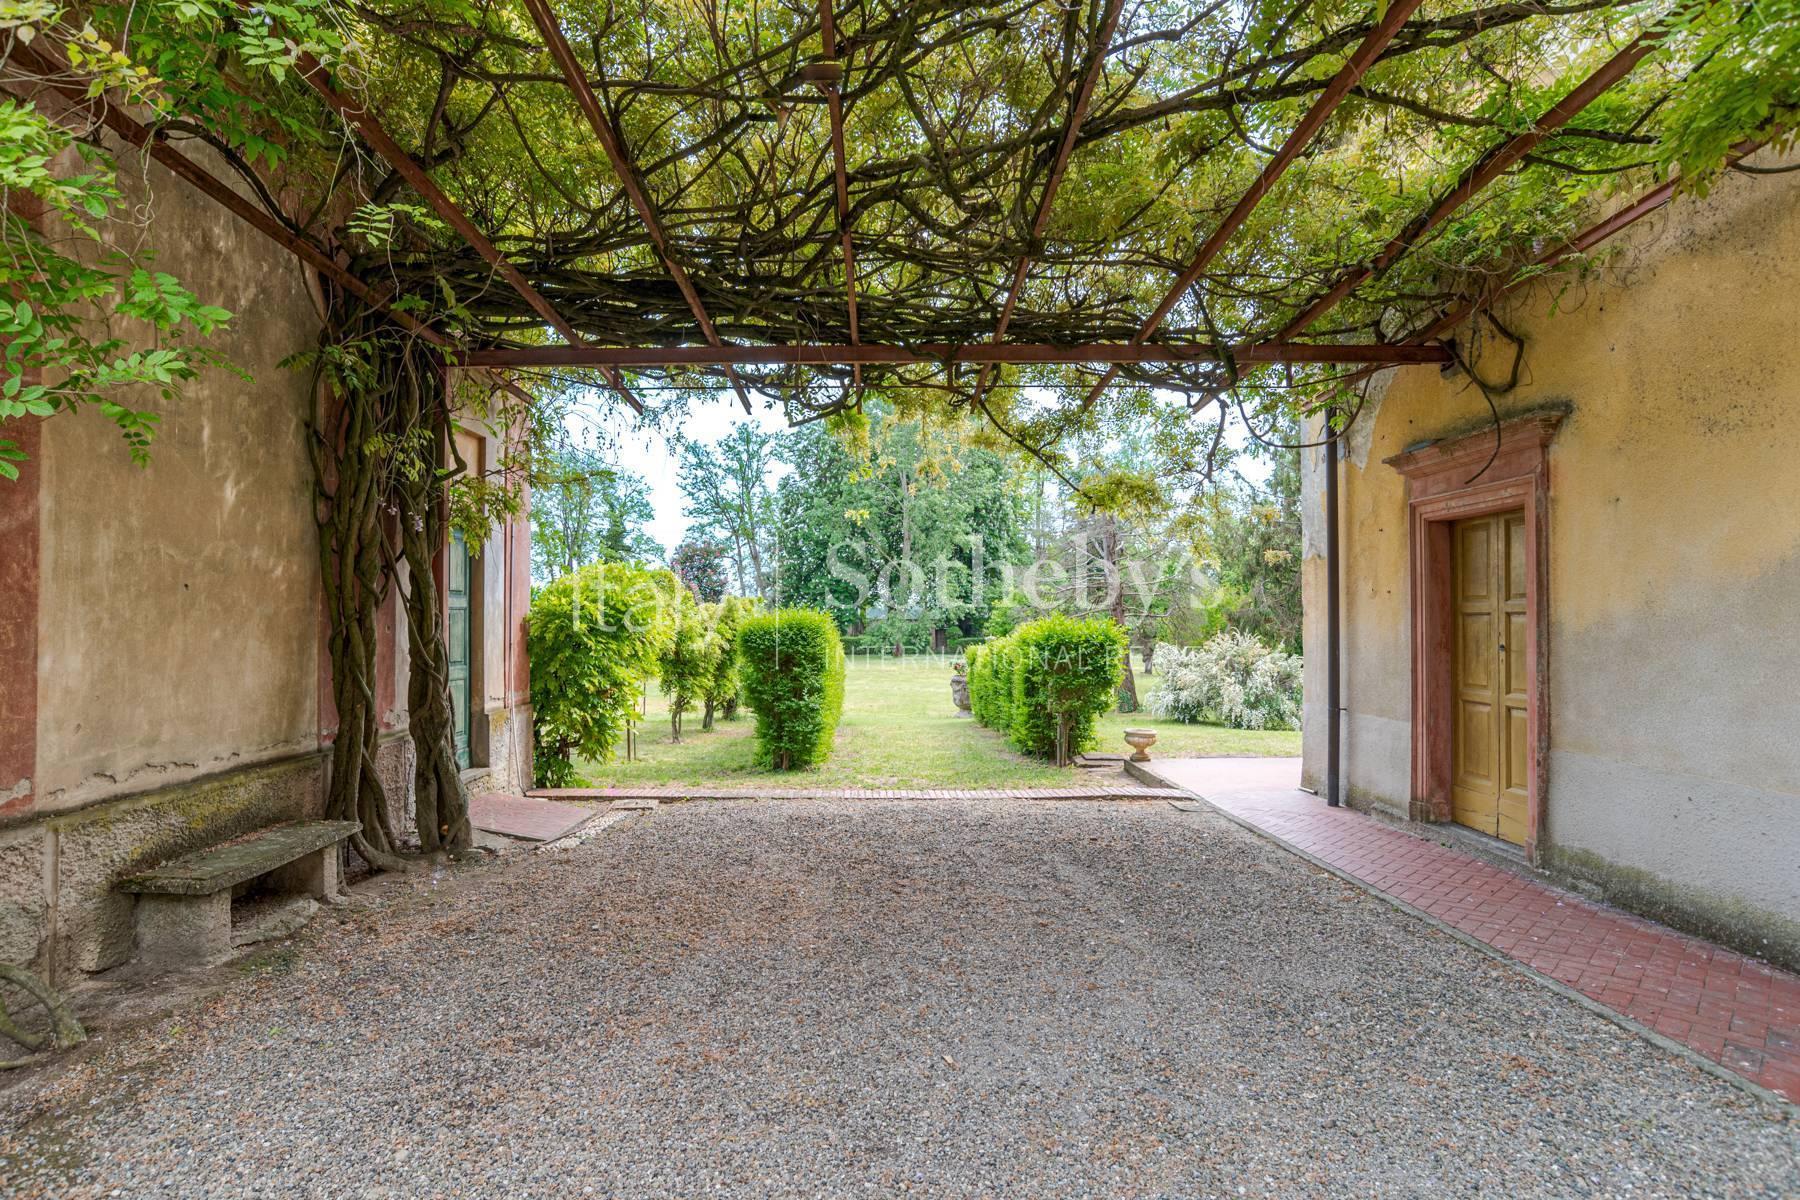 Cascina Bella - Villa du 18ème siècle avec parc à Oltrepo' Pavese - 10